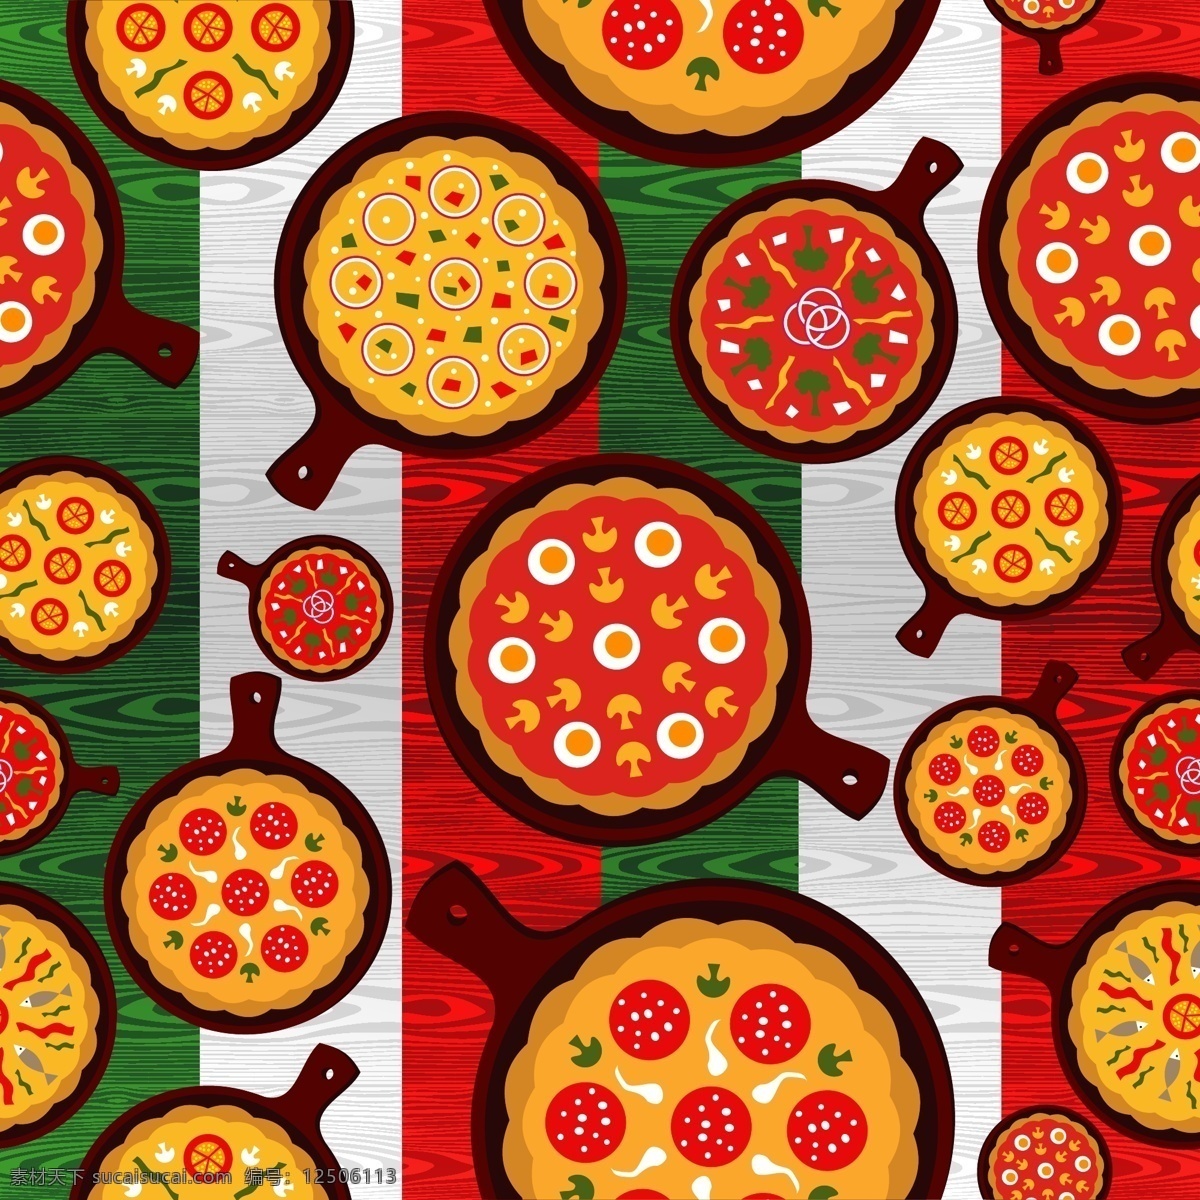 披萨 主题 菜单 矢量 pizza 菜单封面 餐具 创意 封面设计 可爱 模板 设计稿 素材元素 源文件 矢量图